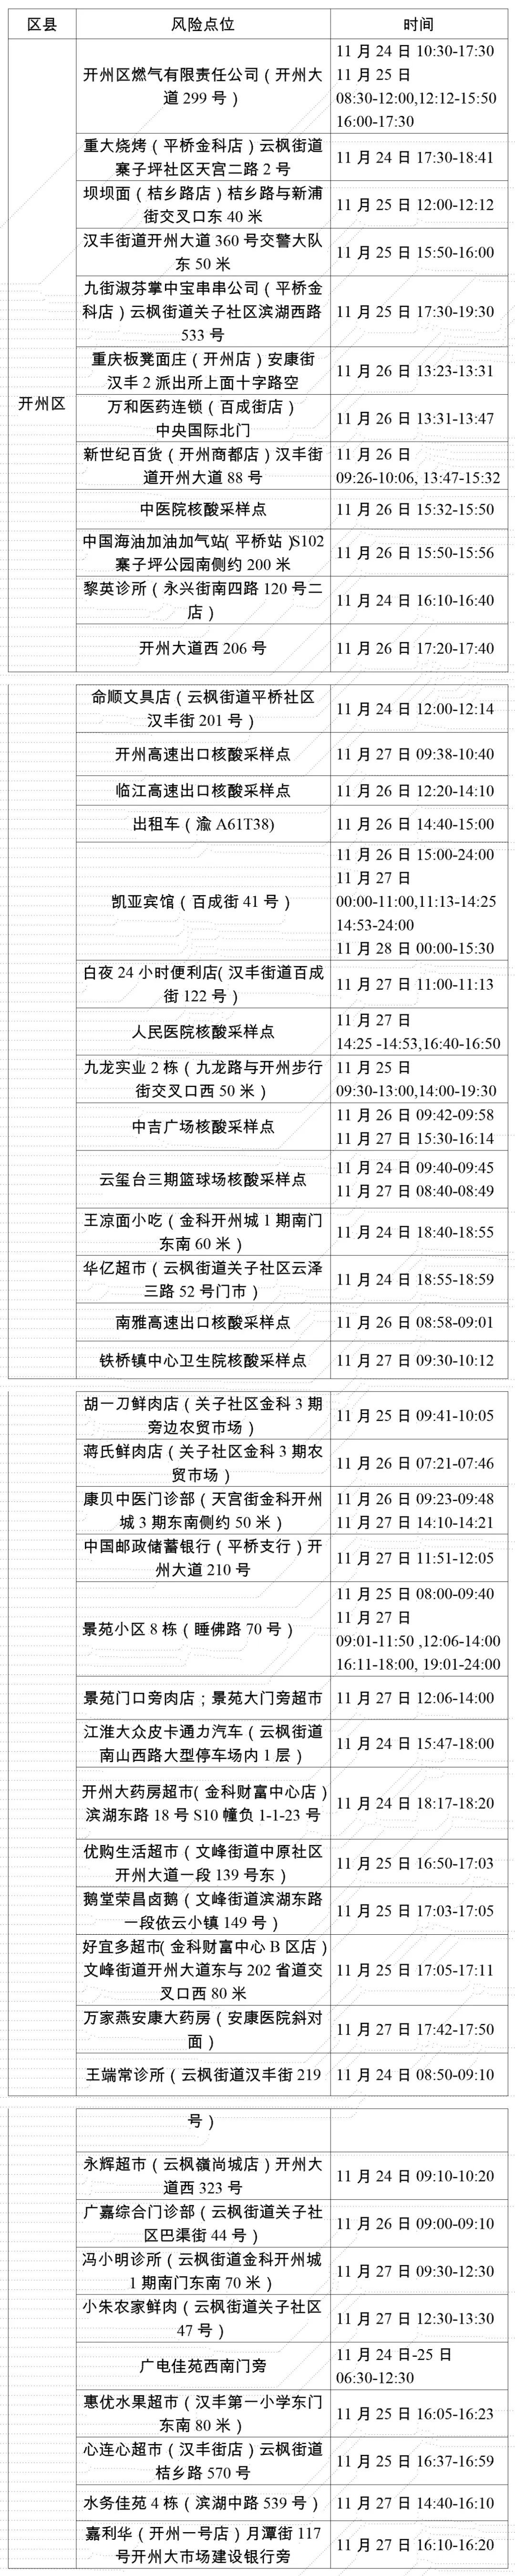 11月28日重庆开州新增病例轨迹涉及风险点位公布